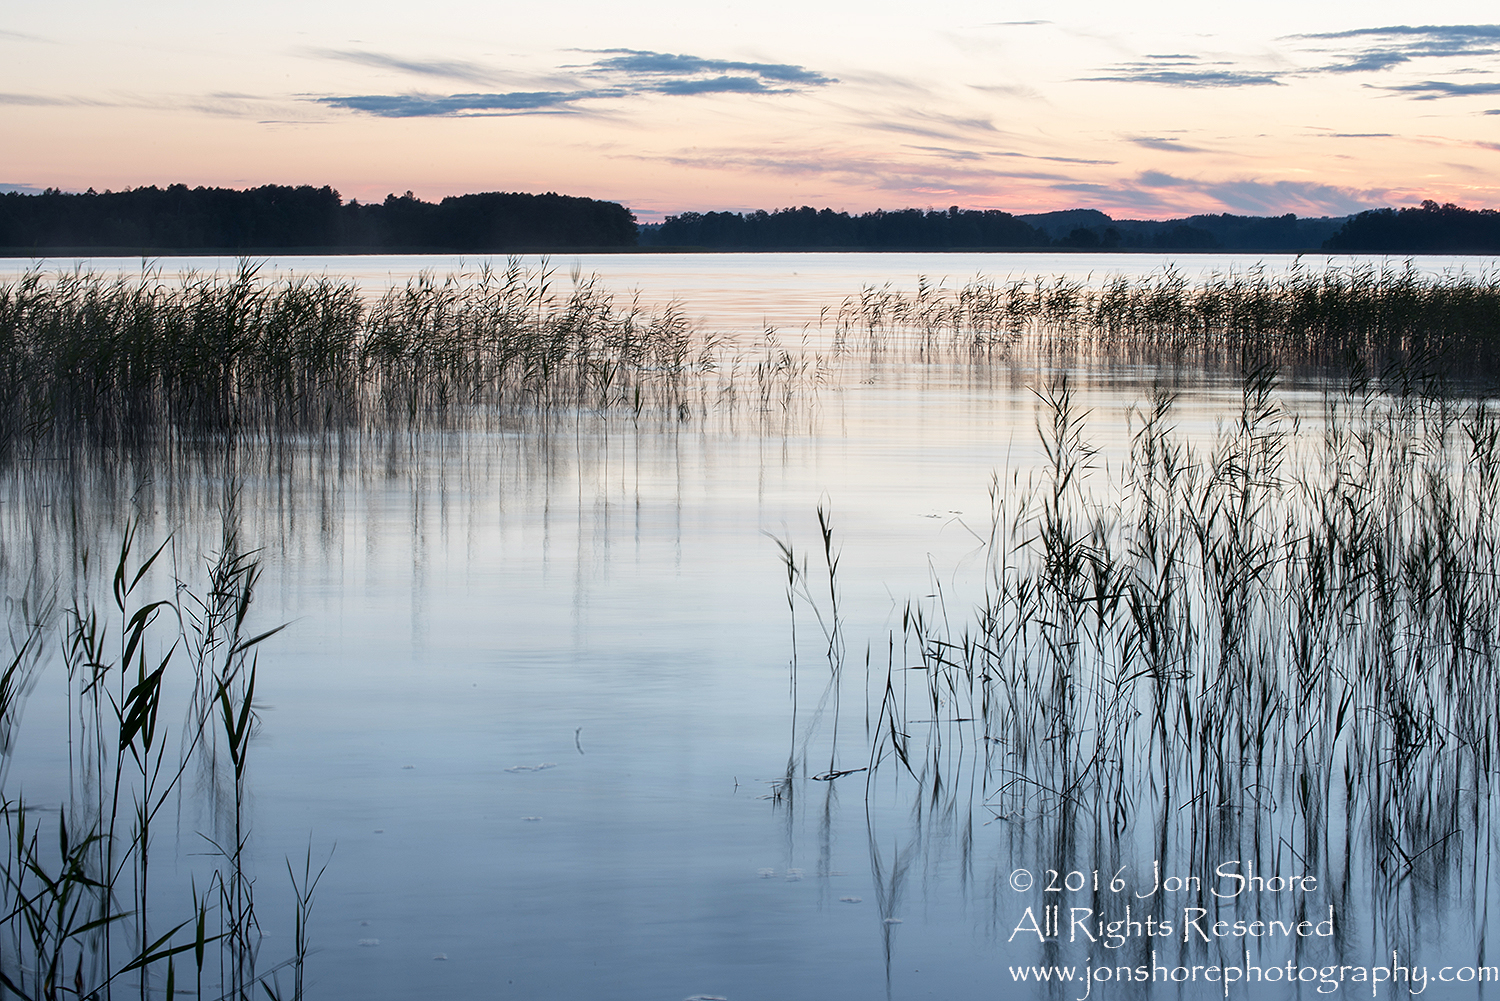 Sunset on Lake. Latgale, Latvia. Tamron 100mm